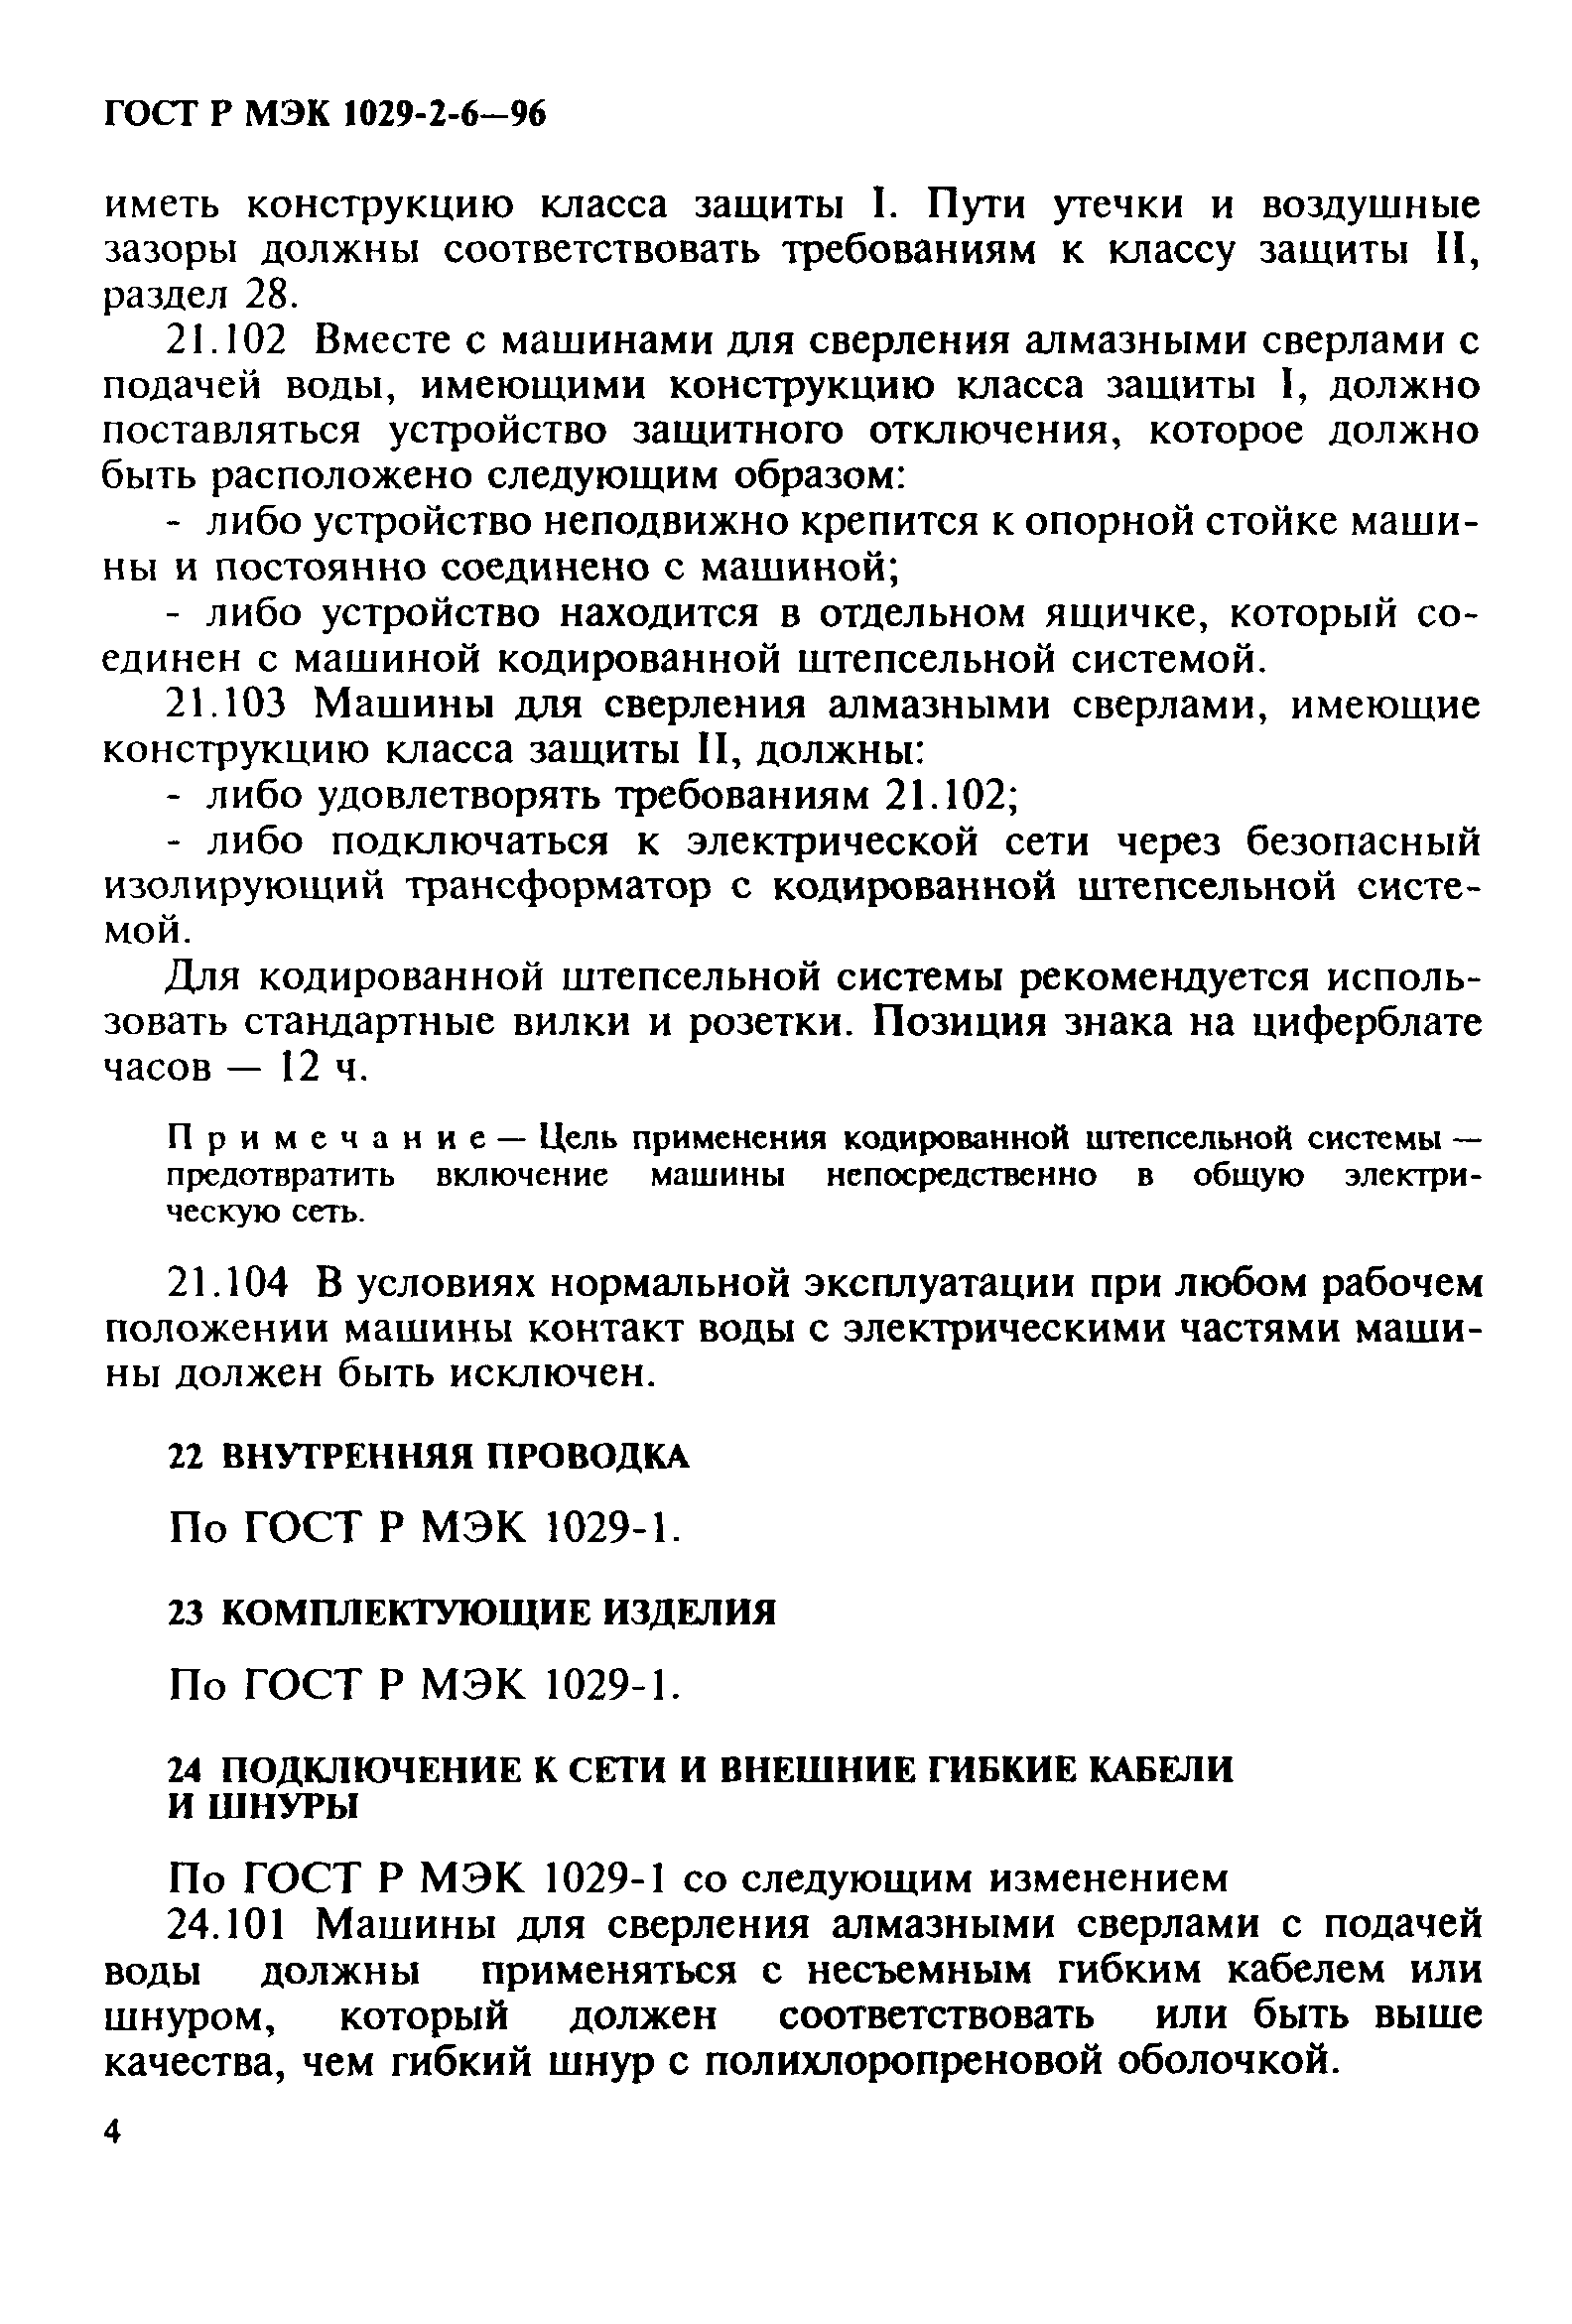 ГОСТ Р МЭК 1029-2-6-96